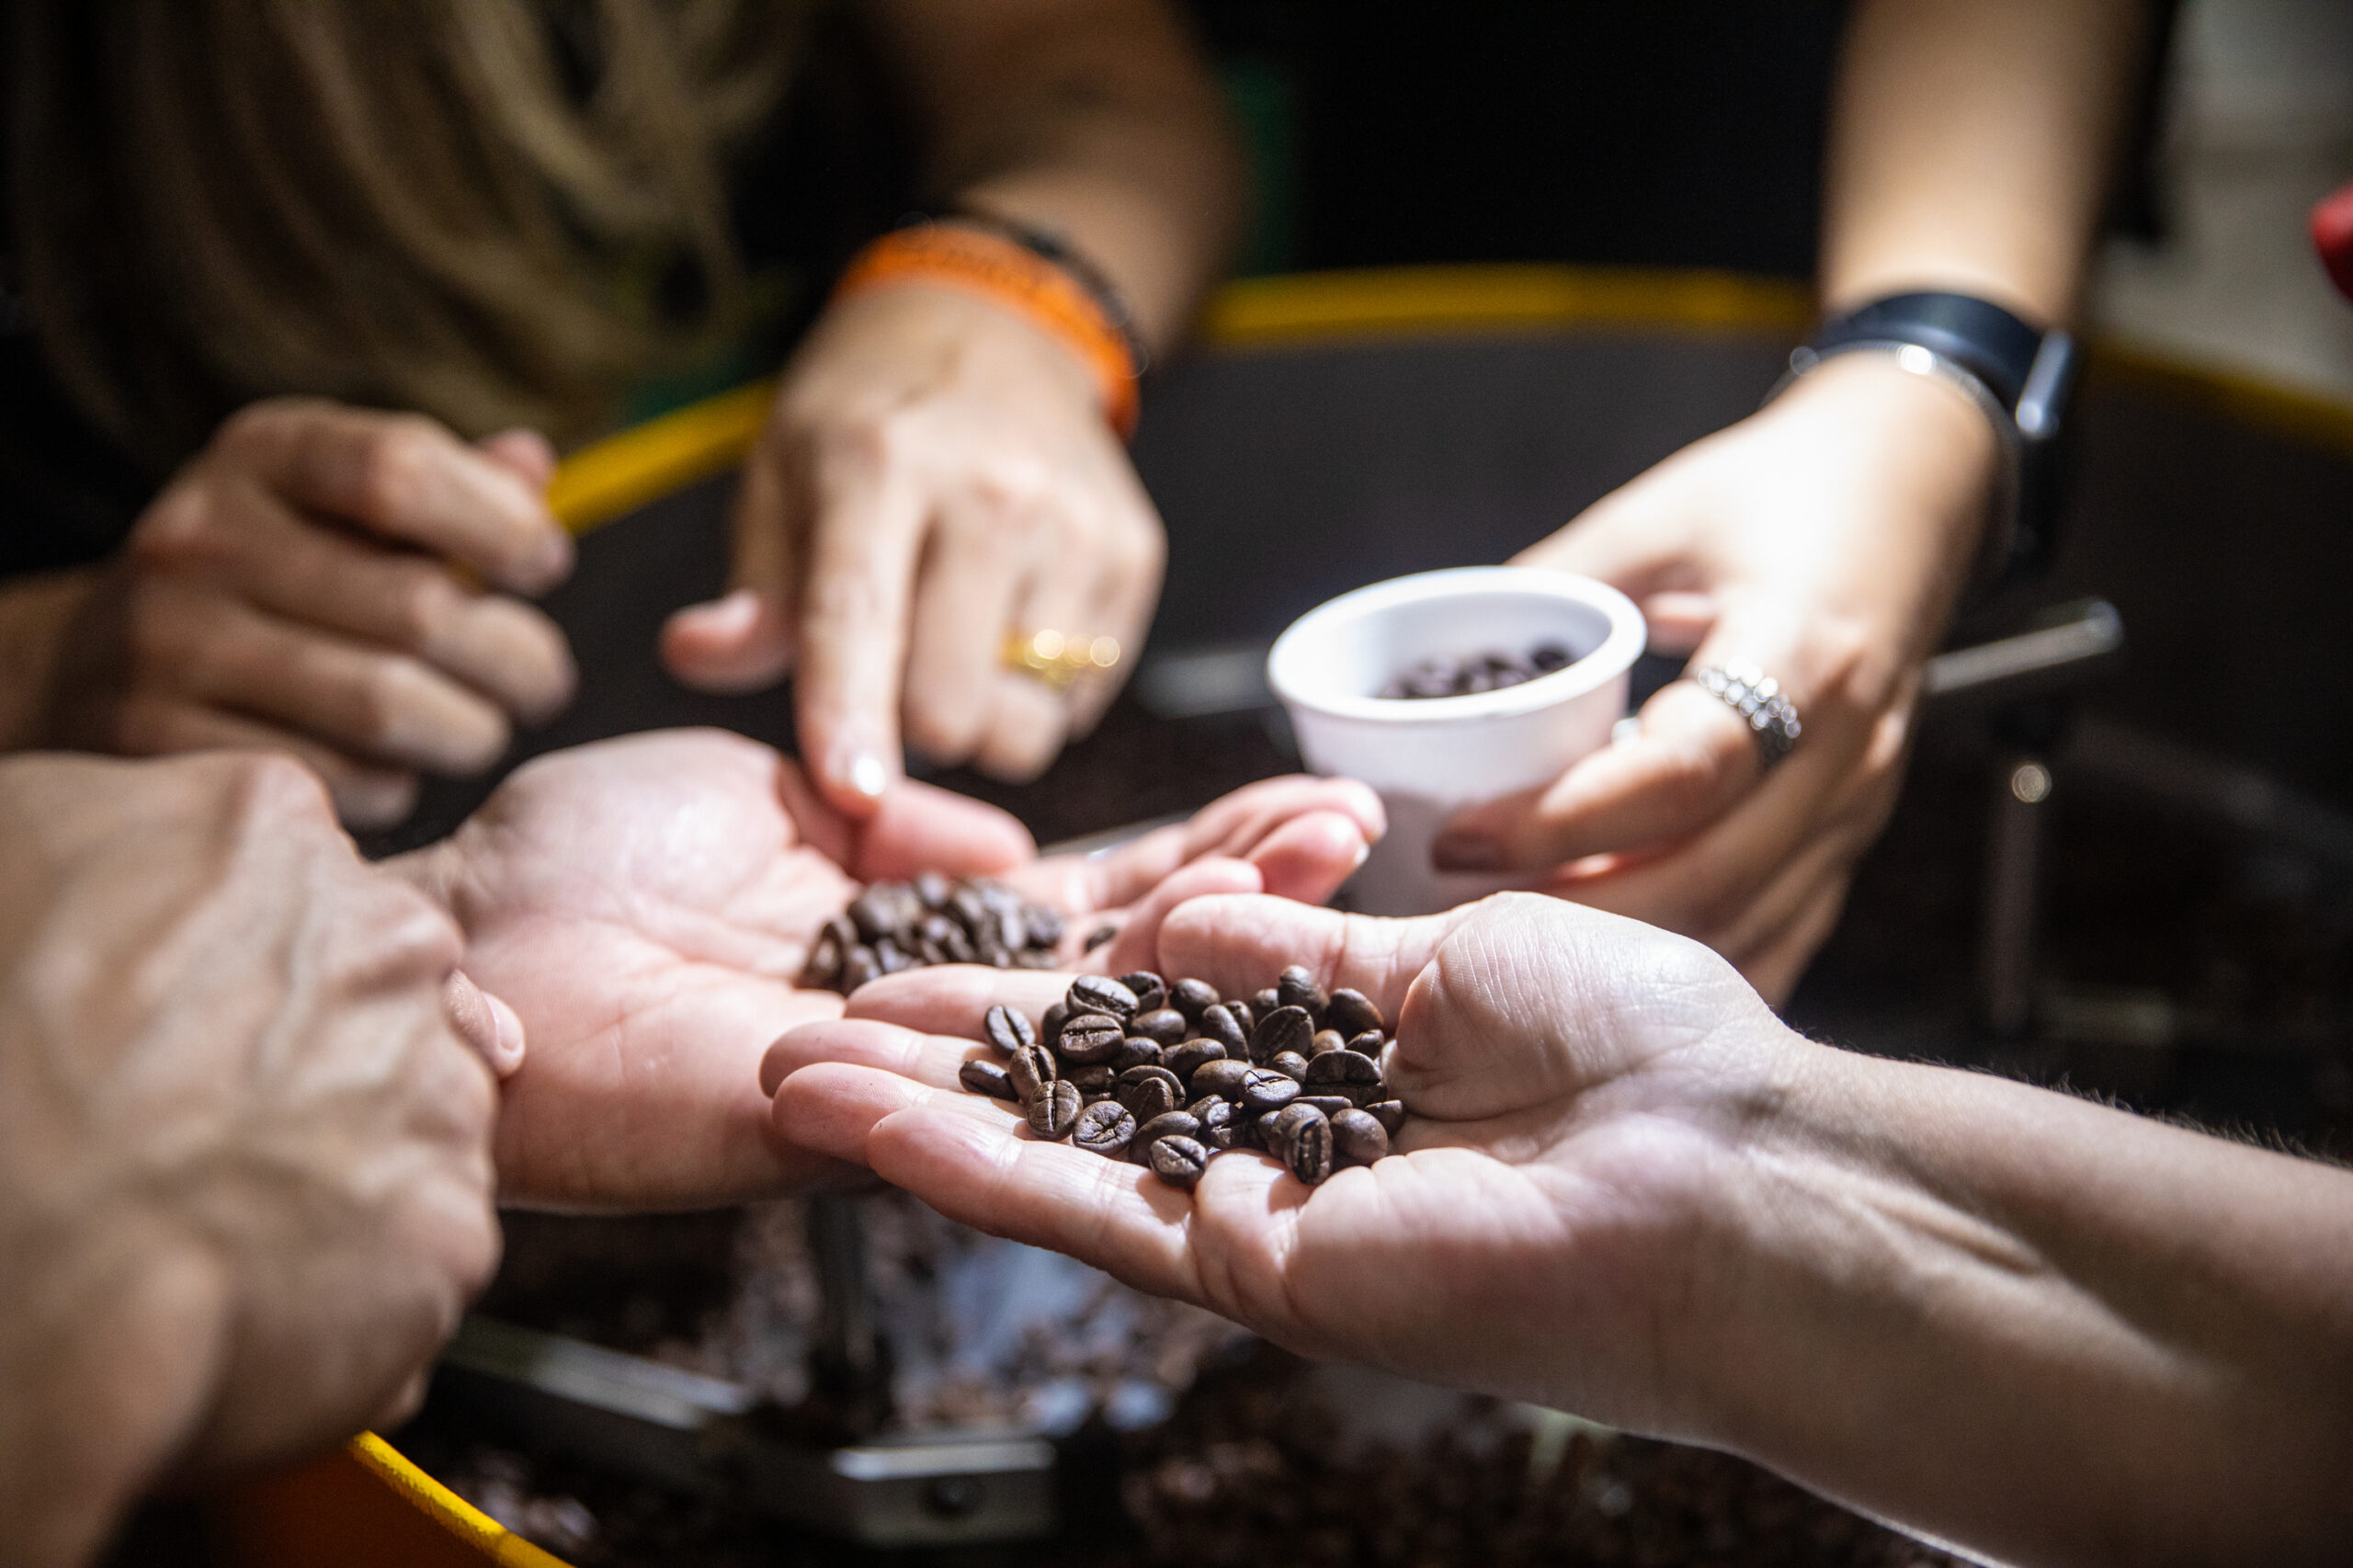 บราซิลส่งออก 'กาแฟ' ป้อนตลาดจีน ช่วงม.ค.-พ.ย. โตกว่า 220%